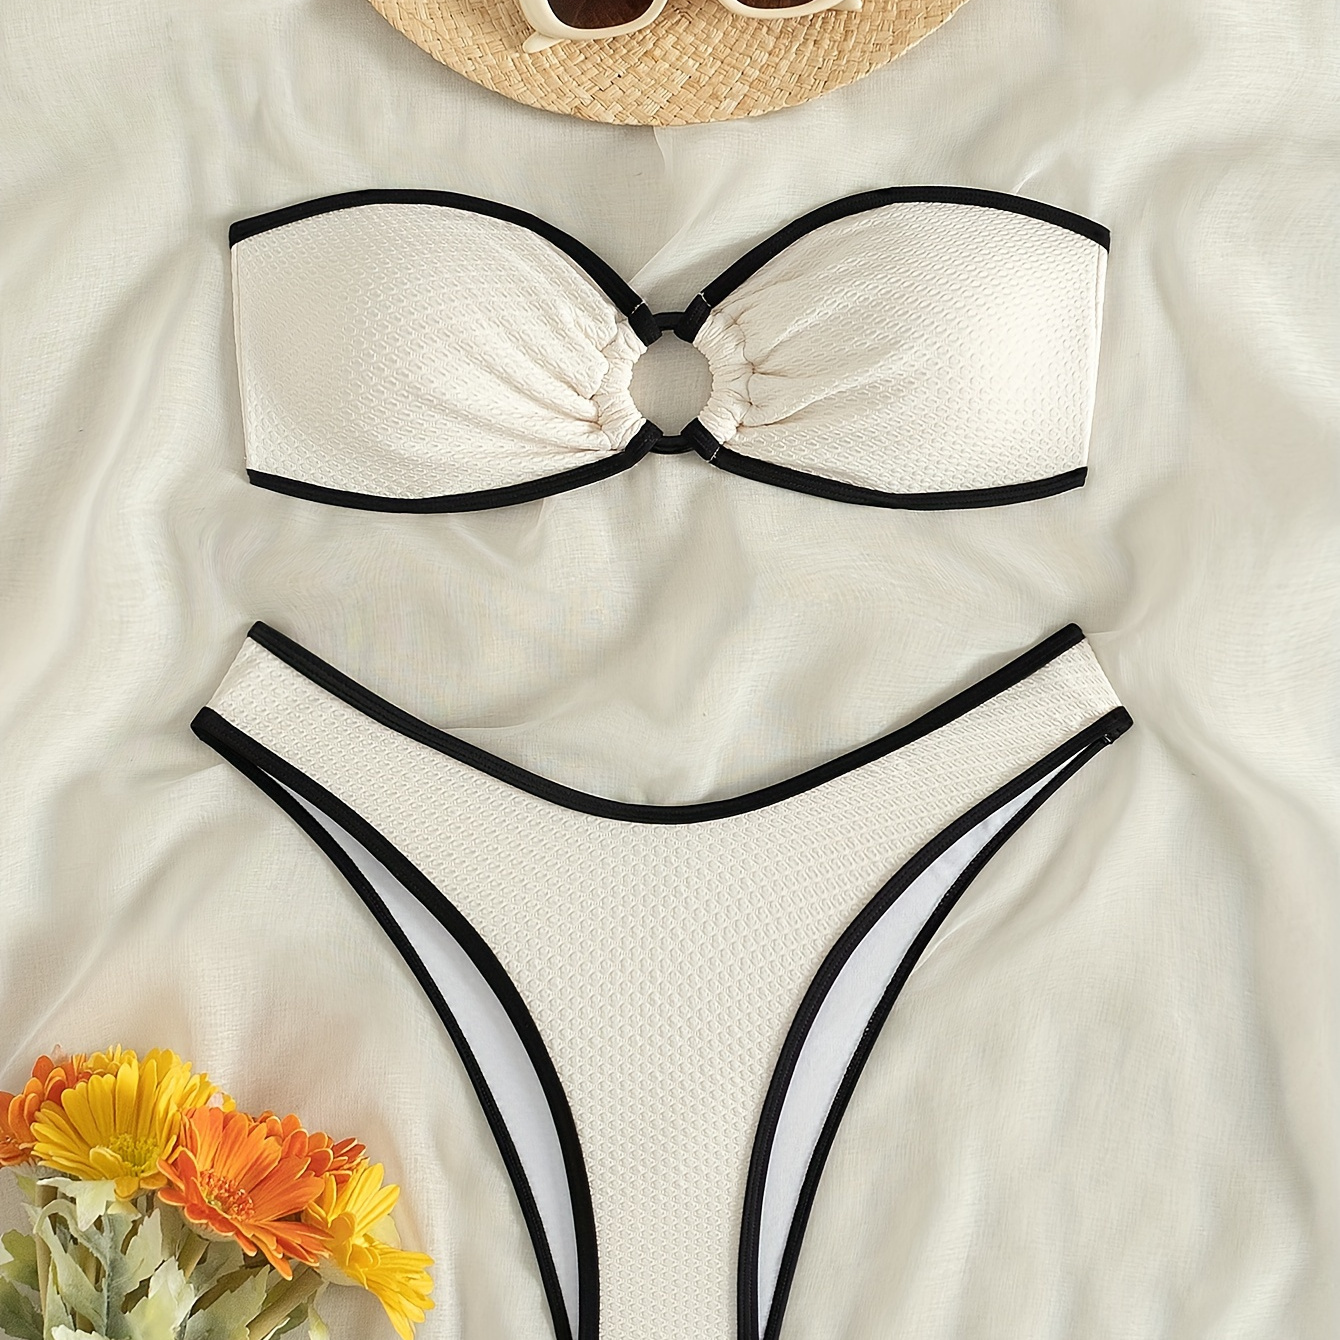 

2-piece Women's Bikini Set, Textured Fabric Swimwear, Bow Detail, High Waist Bottoms, Contrast Trim, Summer Beach Outfit